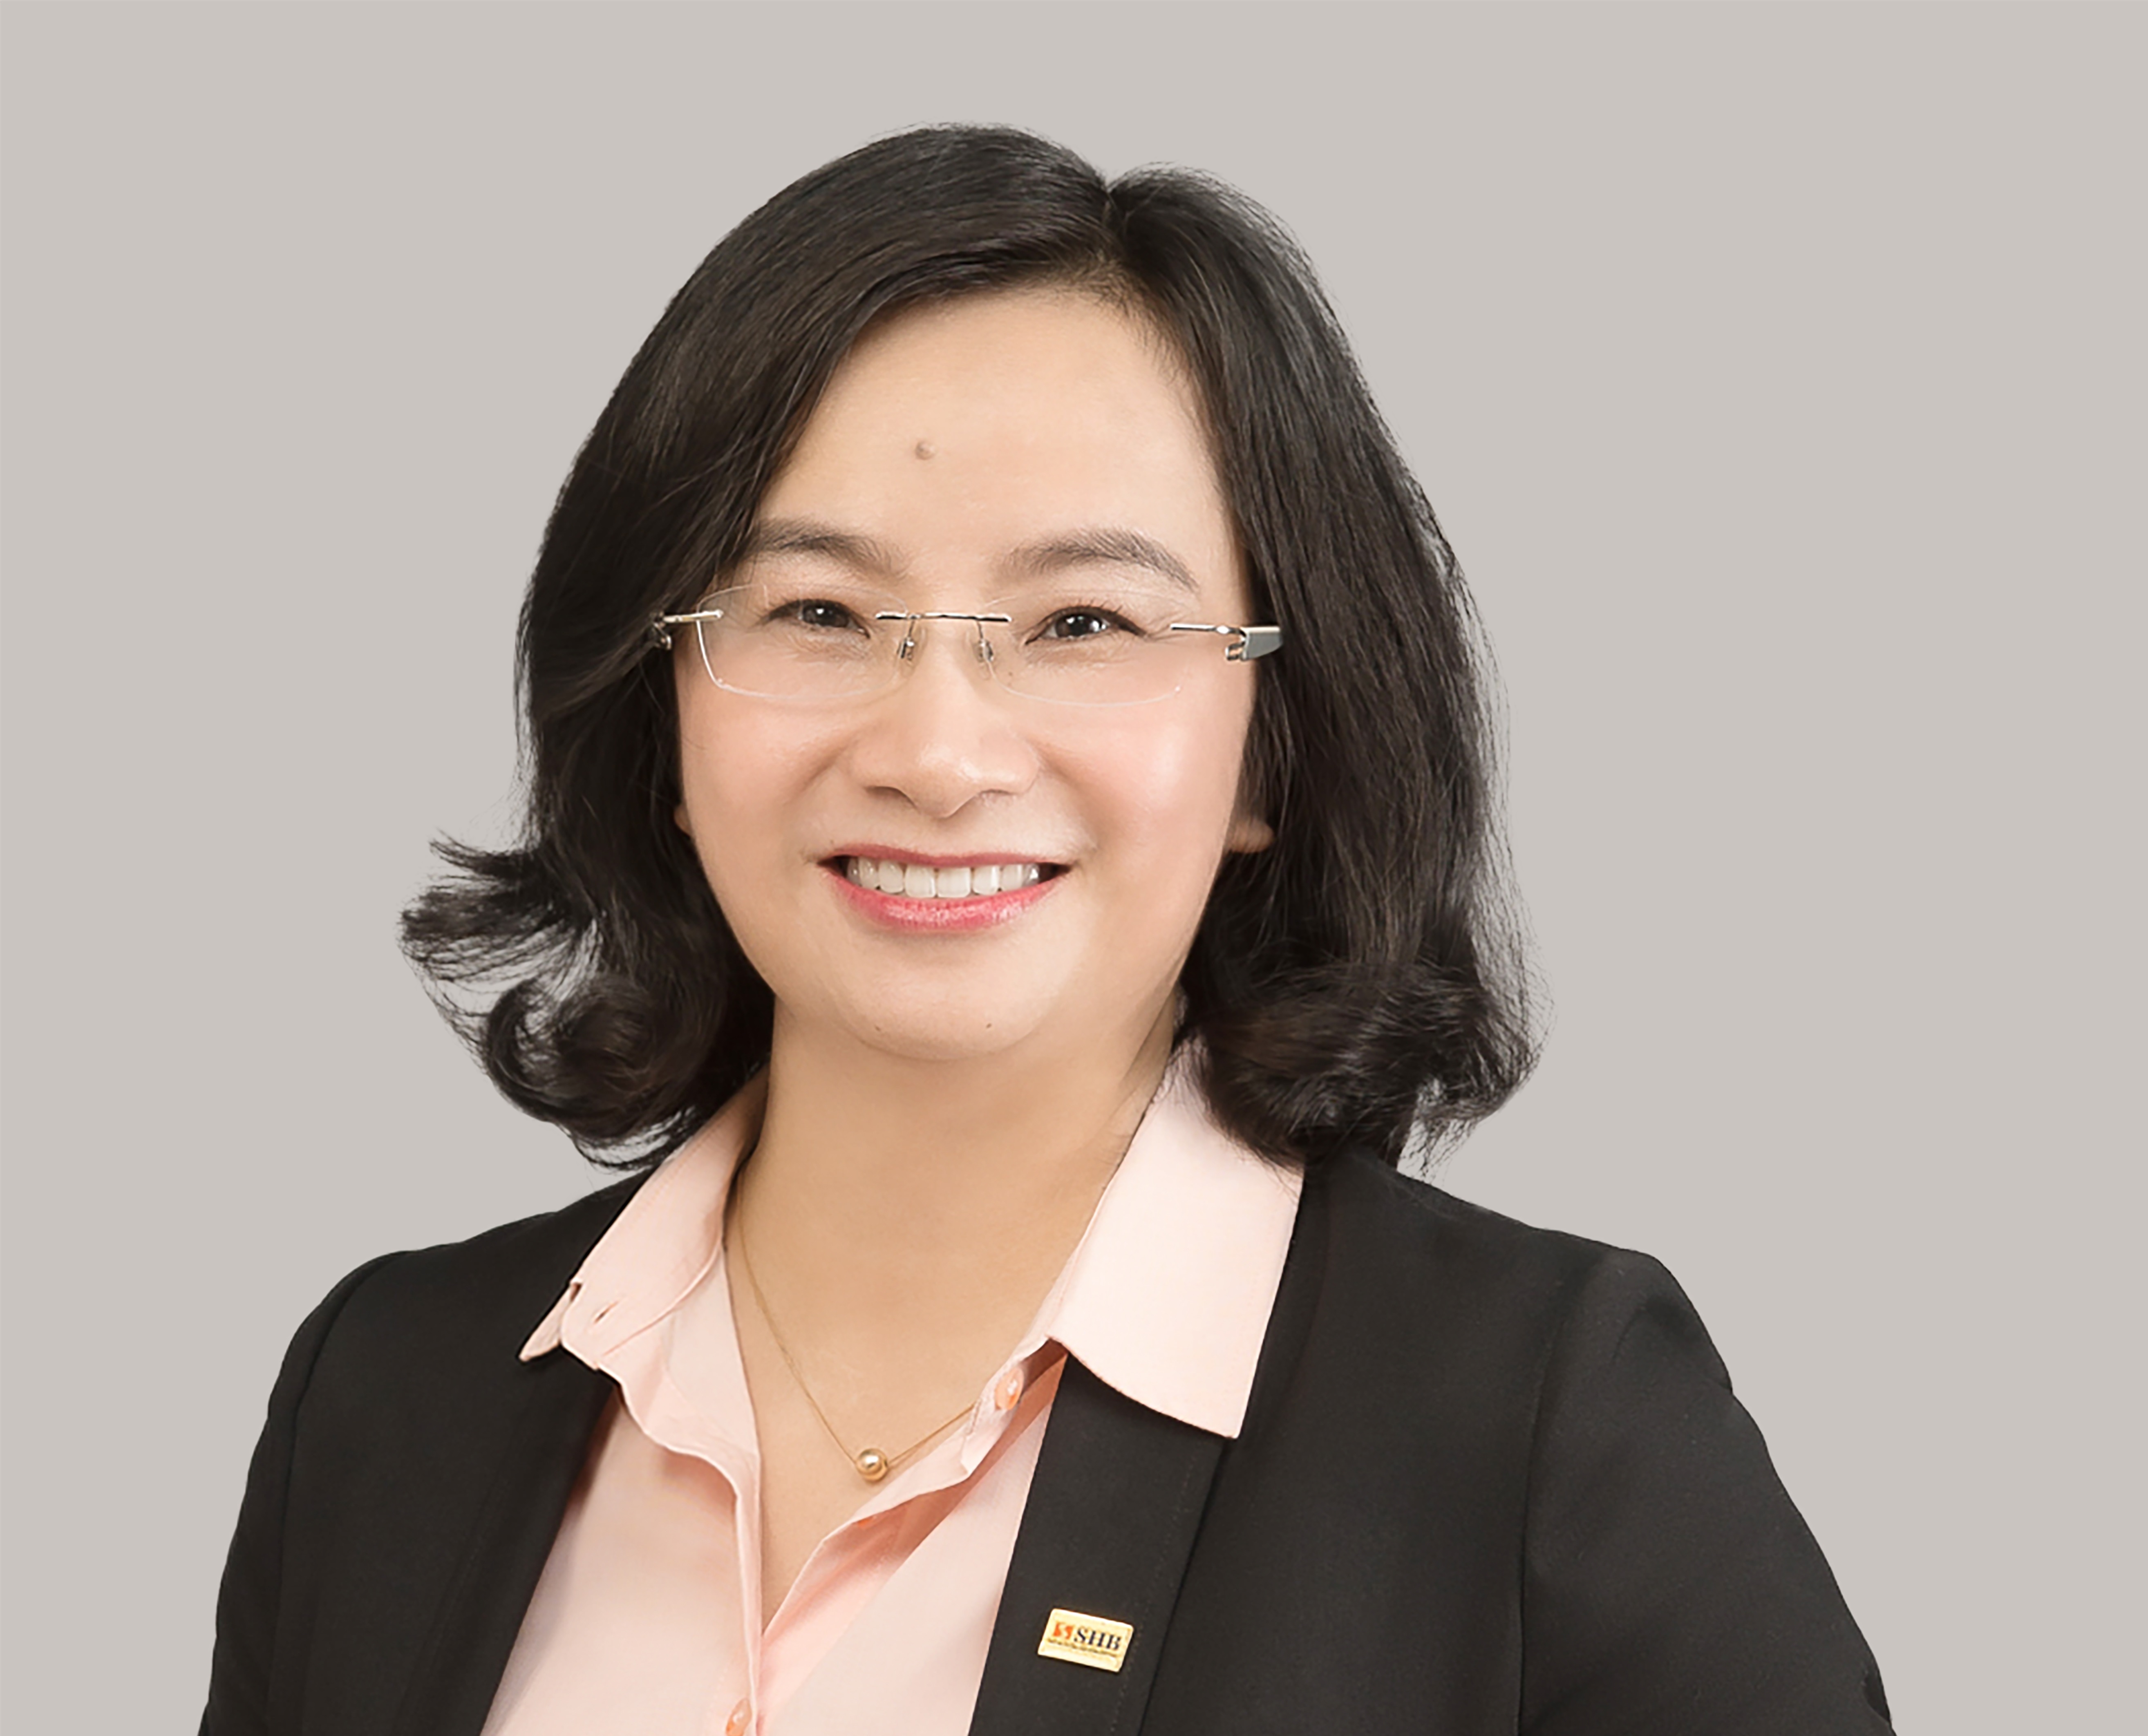 Ngân hàng nhà nước chấp nhận bà Ngô Thu Hà giữ chức vụ Tổng giám đốc SHB